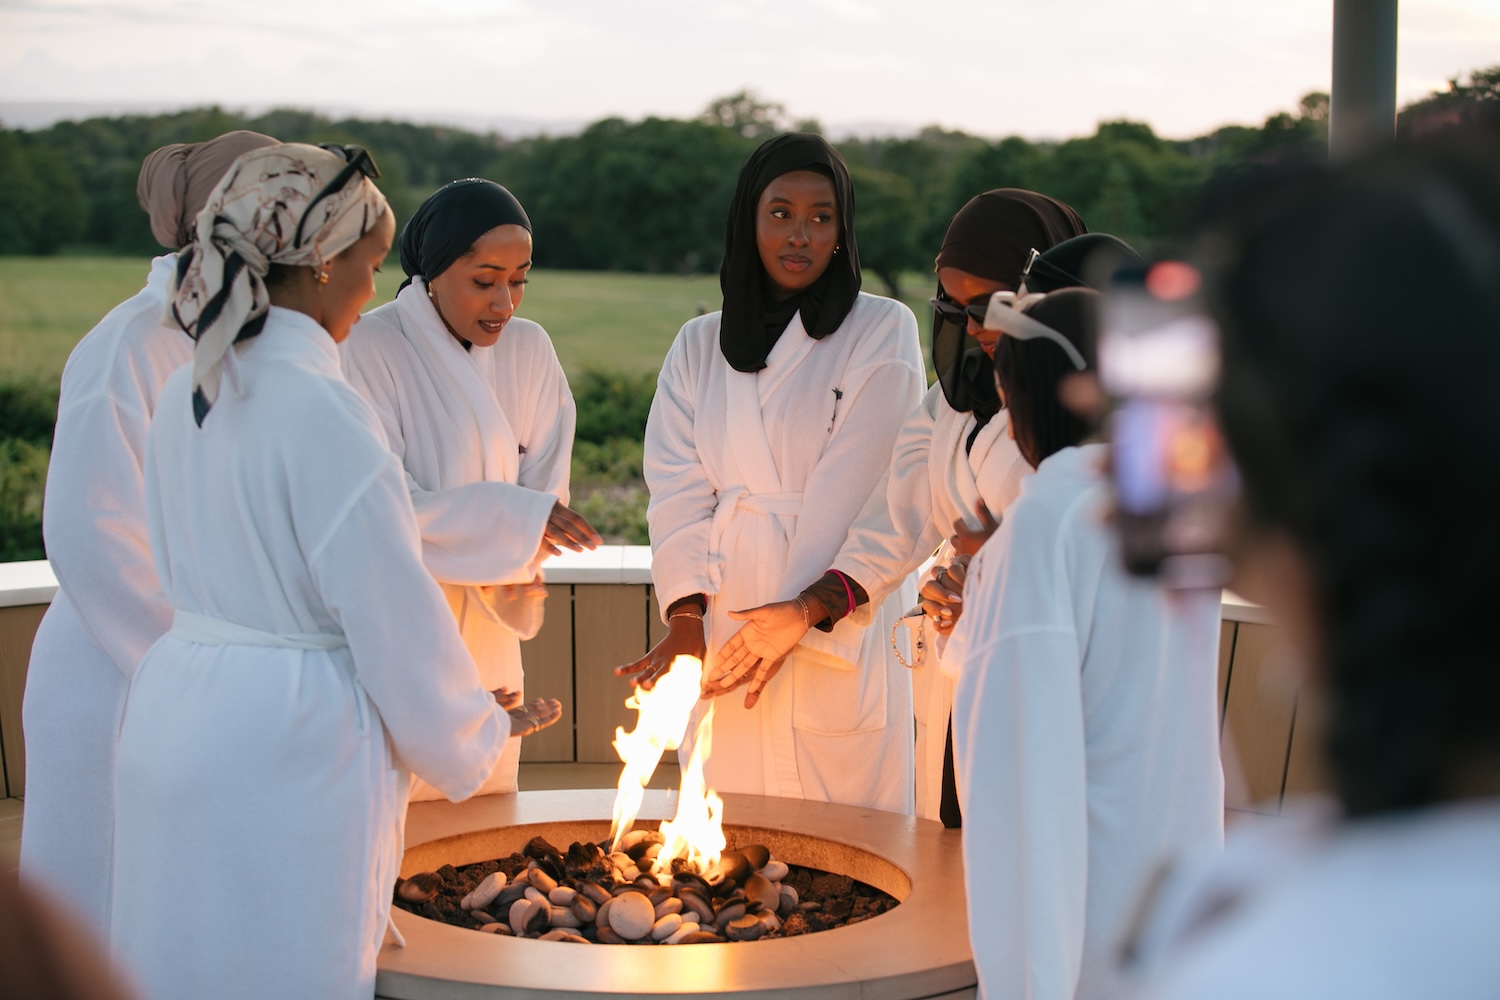 Women in bathrobes stood around a fire